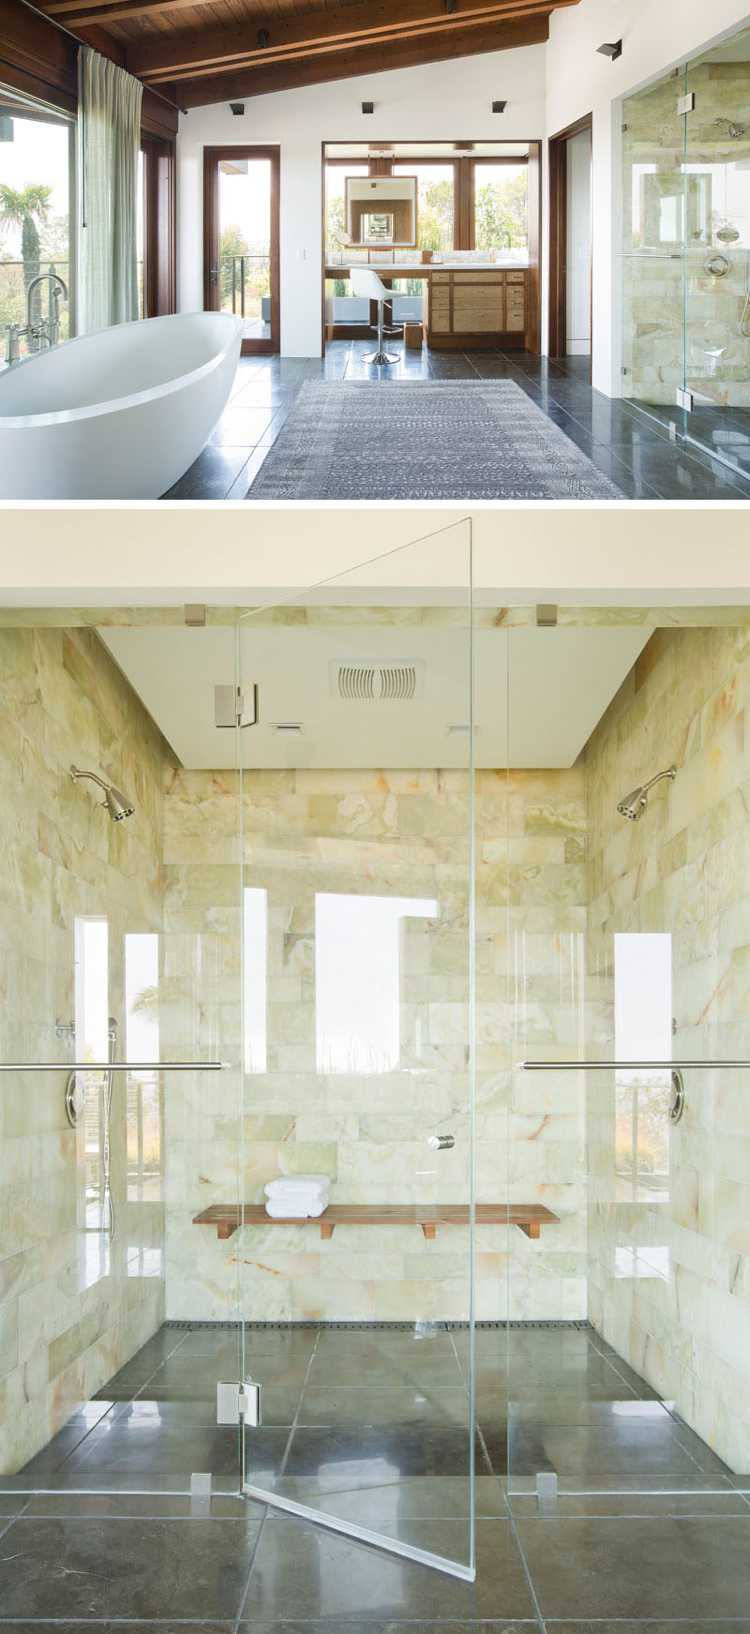 natursten beklädnad inuti badrum glasvägg fristående badkar fönster